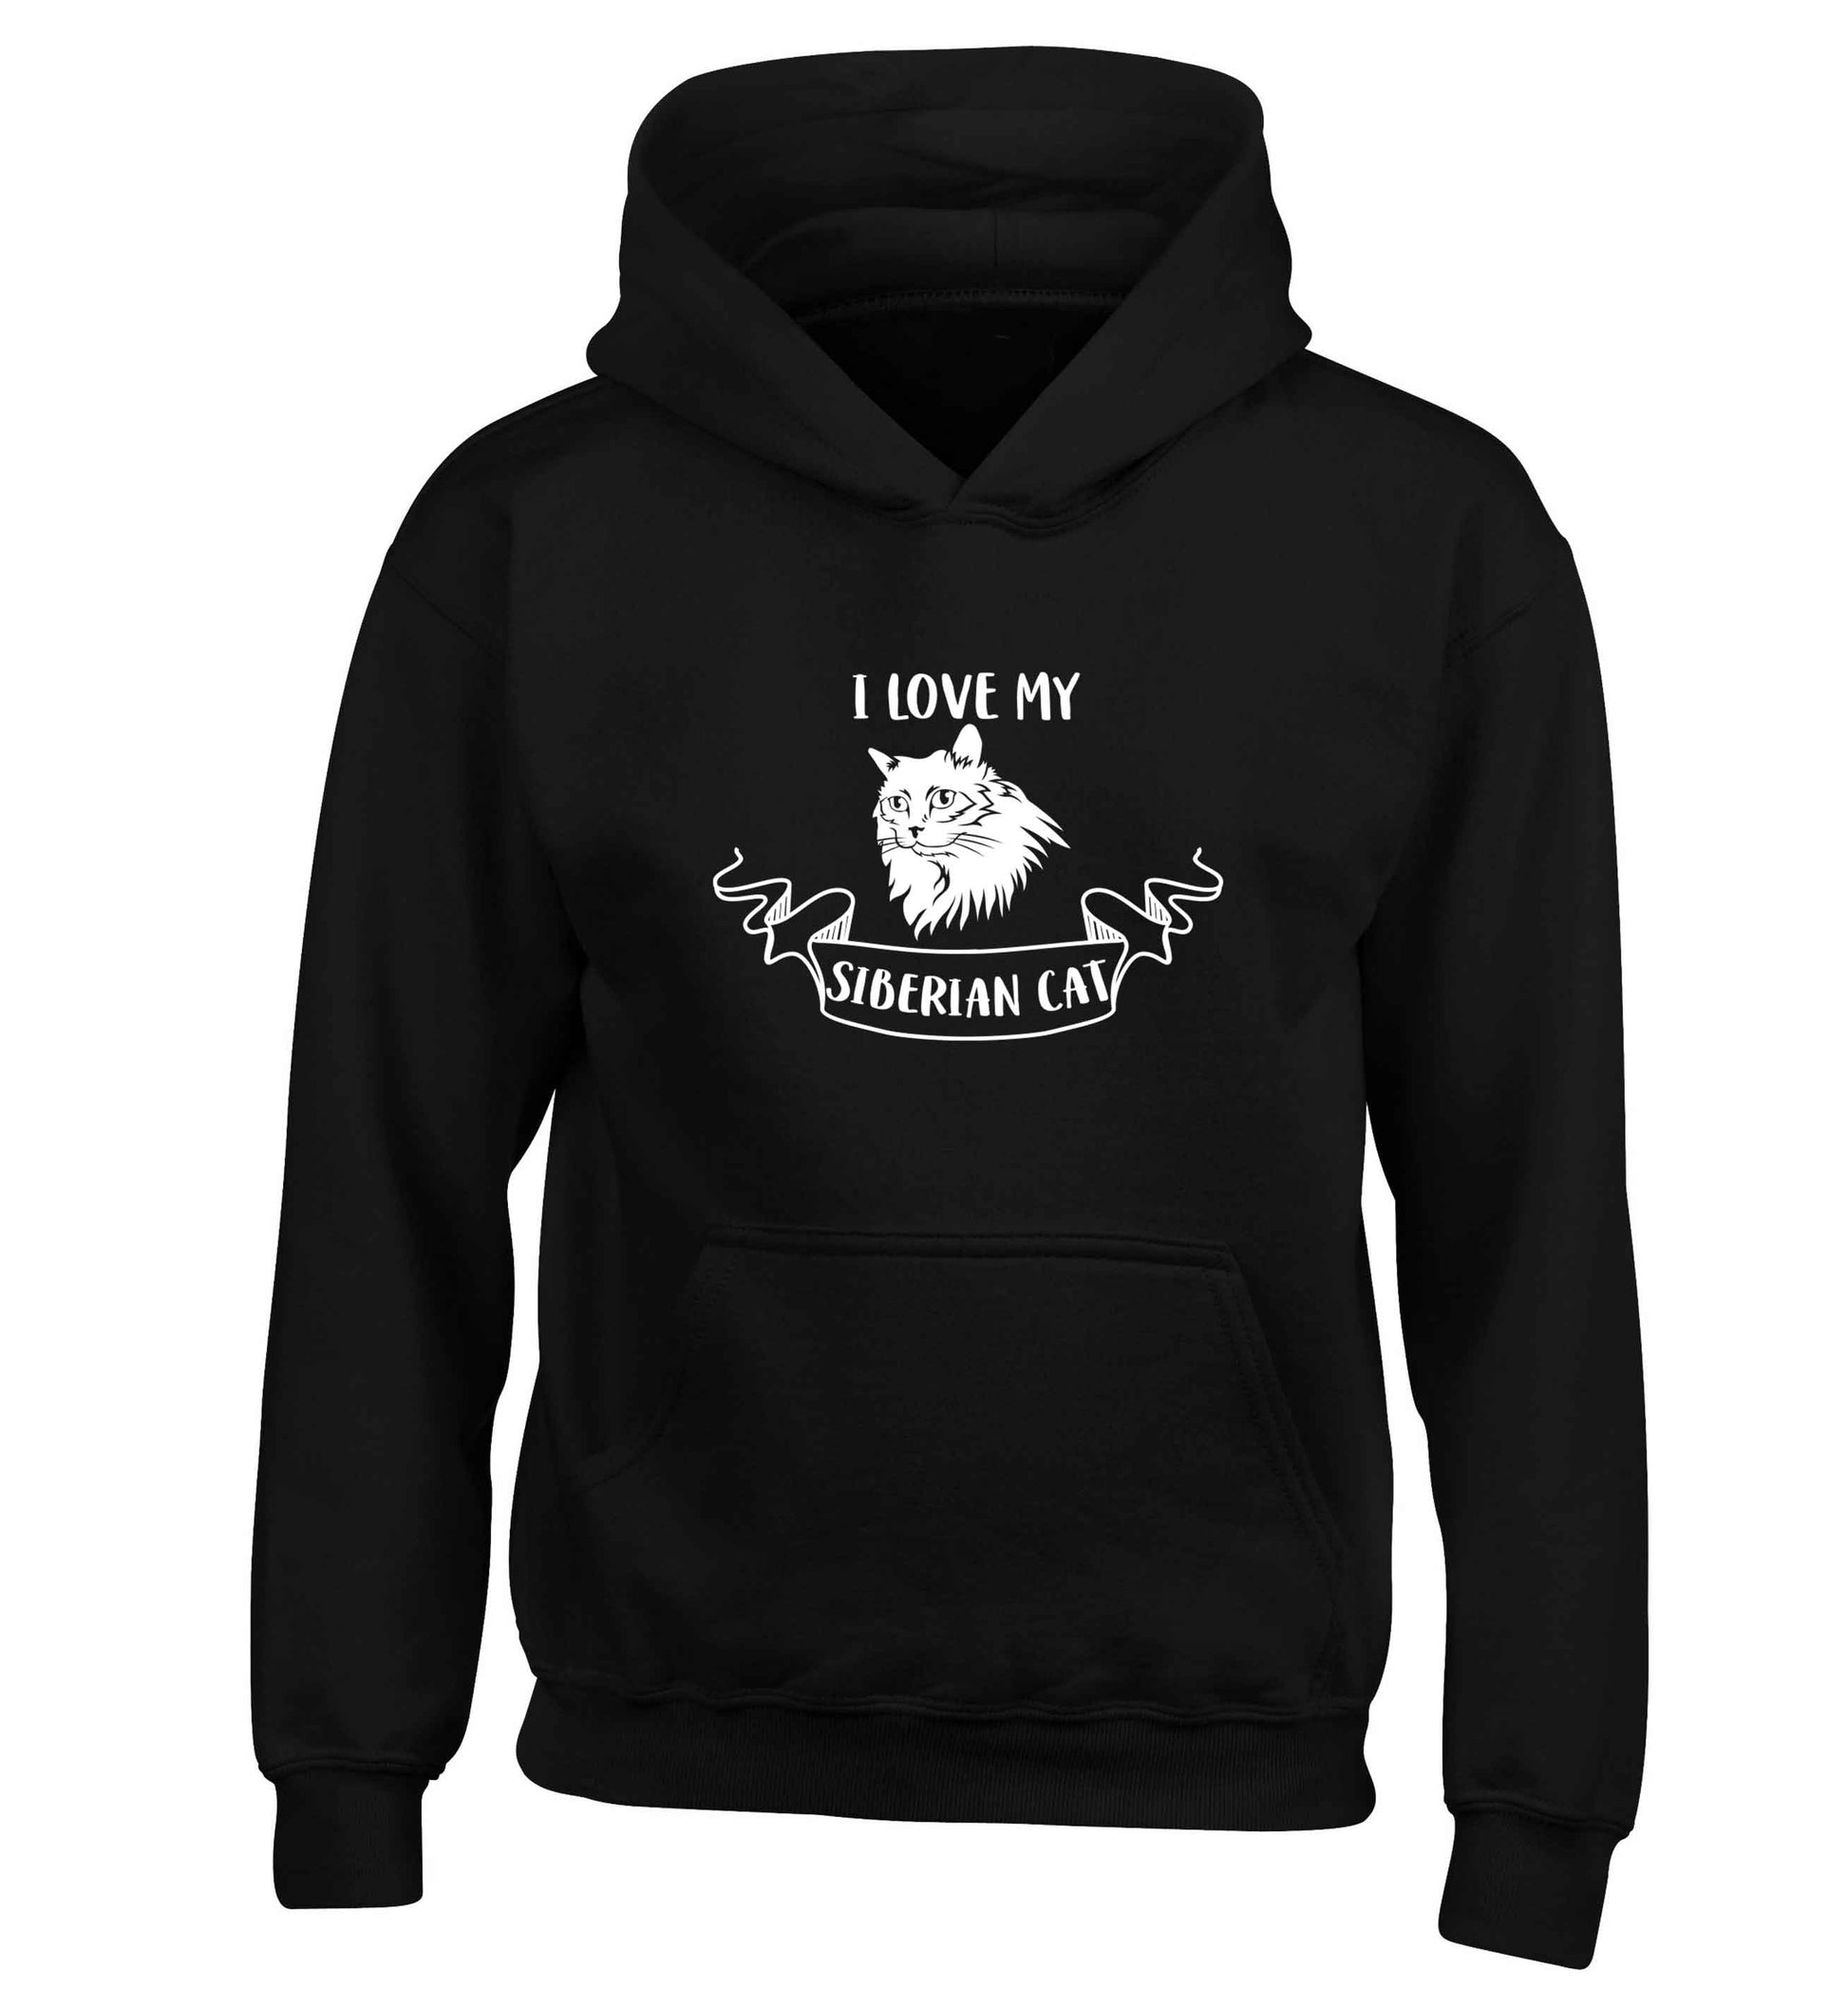 I love my siberian cat children's black hoodie 12-13 Years